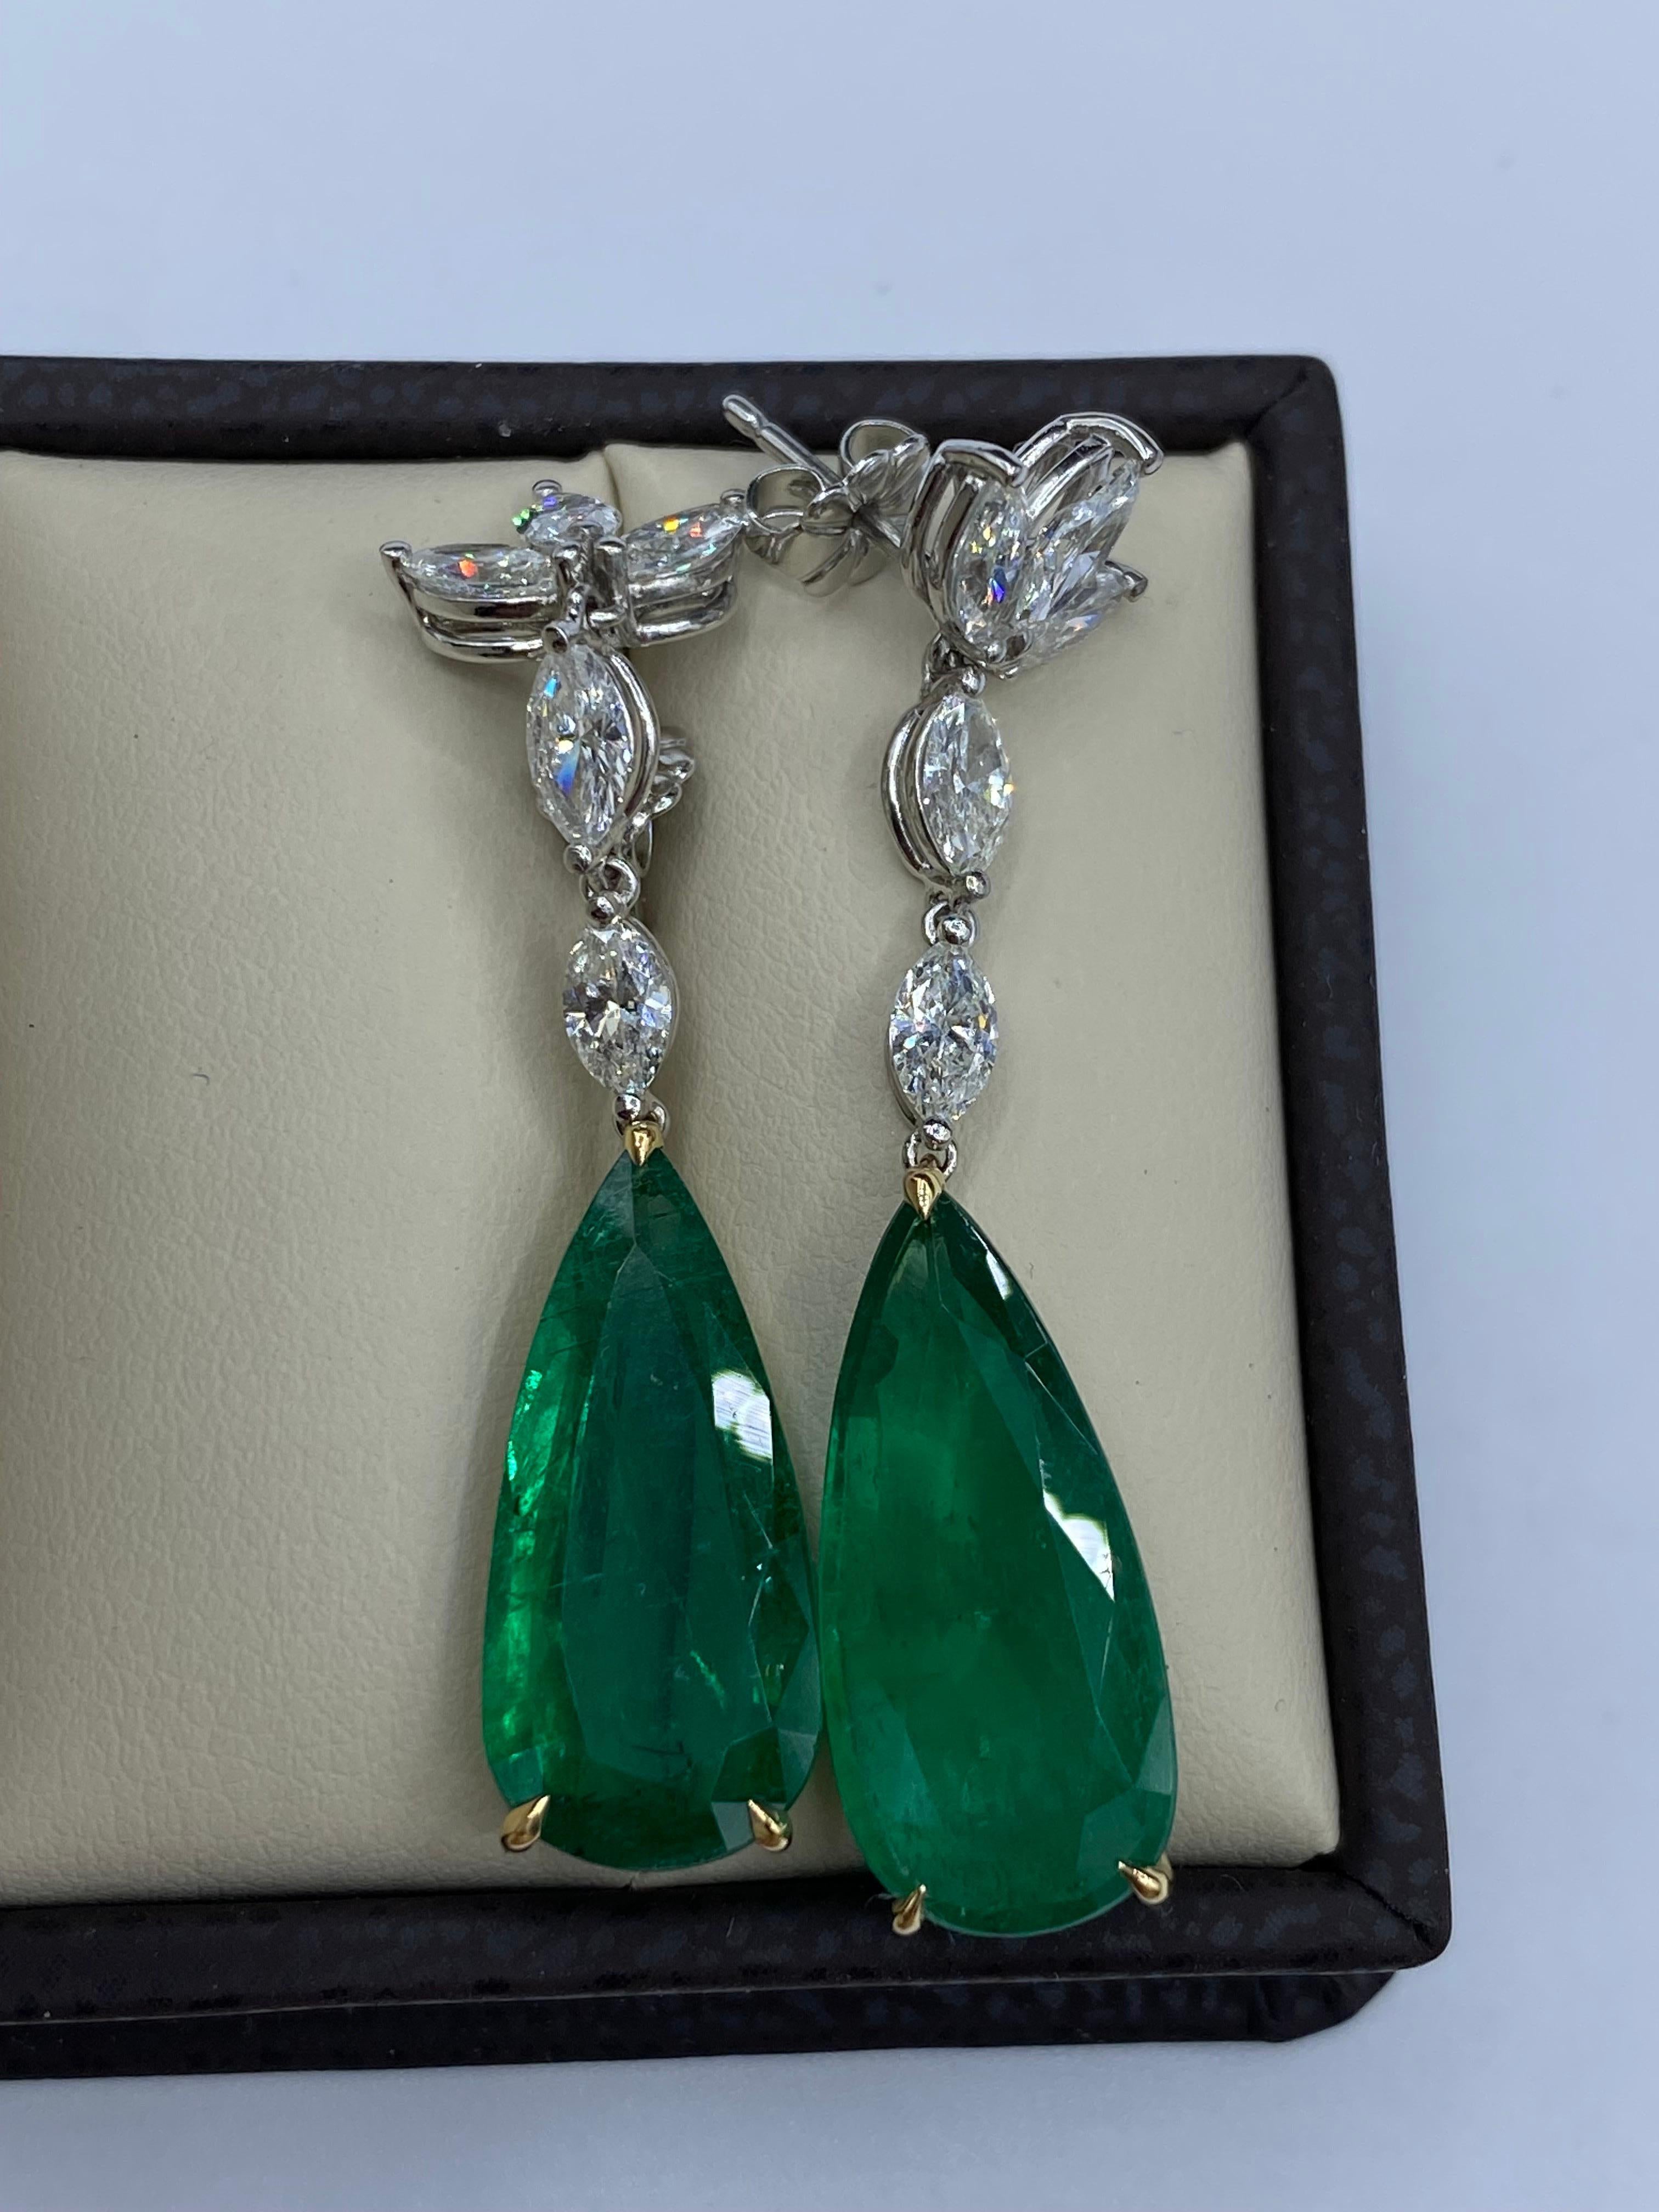 Von Emilio Jewelry, einem bekannten und angesehenen Großhändler mit Sitz auf der berühmten Fifth Avenue in New York, 
2 wunderschöne tropfenförmige Smaragde von insgesamt 12,98 Karat sind der Mittelpunkt dieses Ohrrings. Die Smaragde sind überhaupt